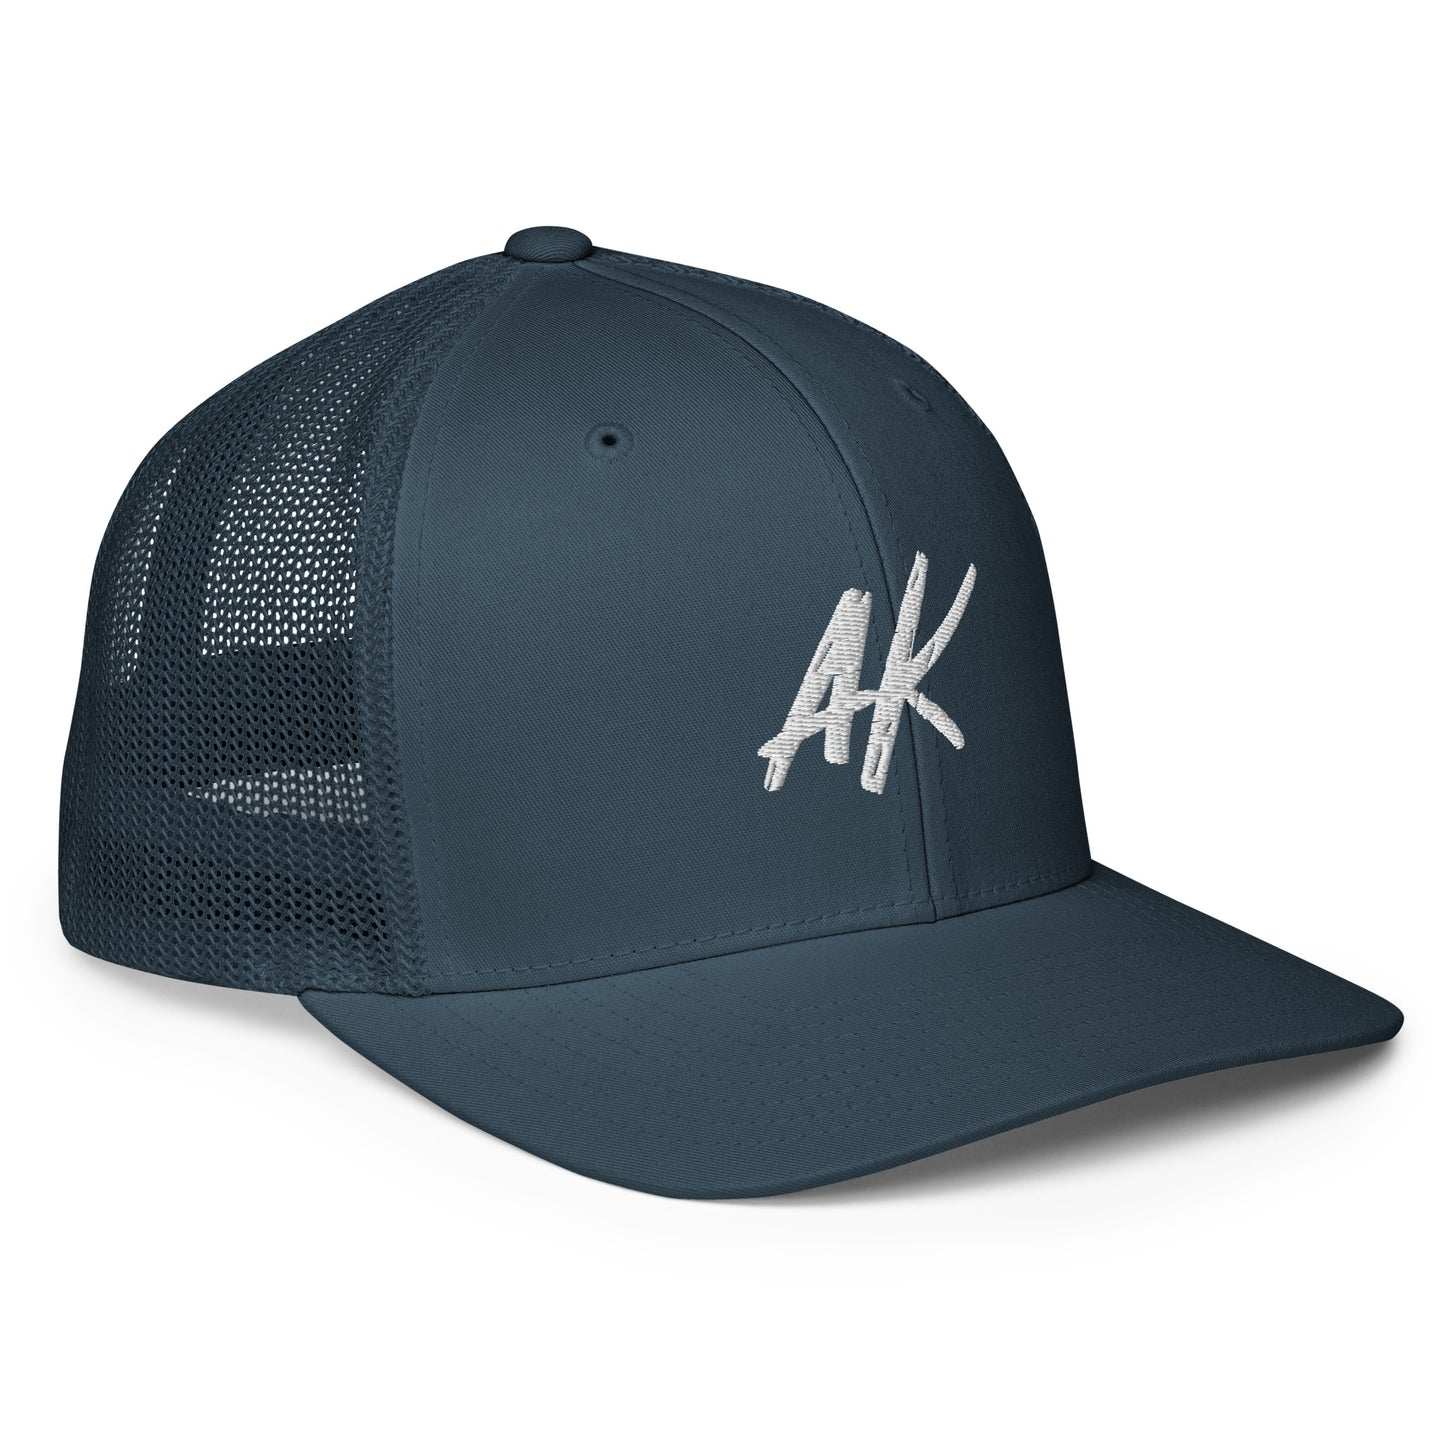 AK Closed-back trucker cap (white)